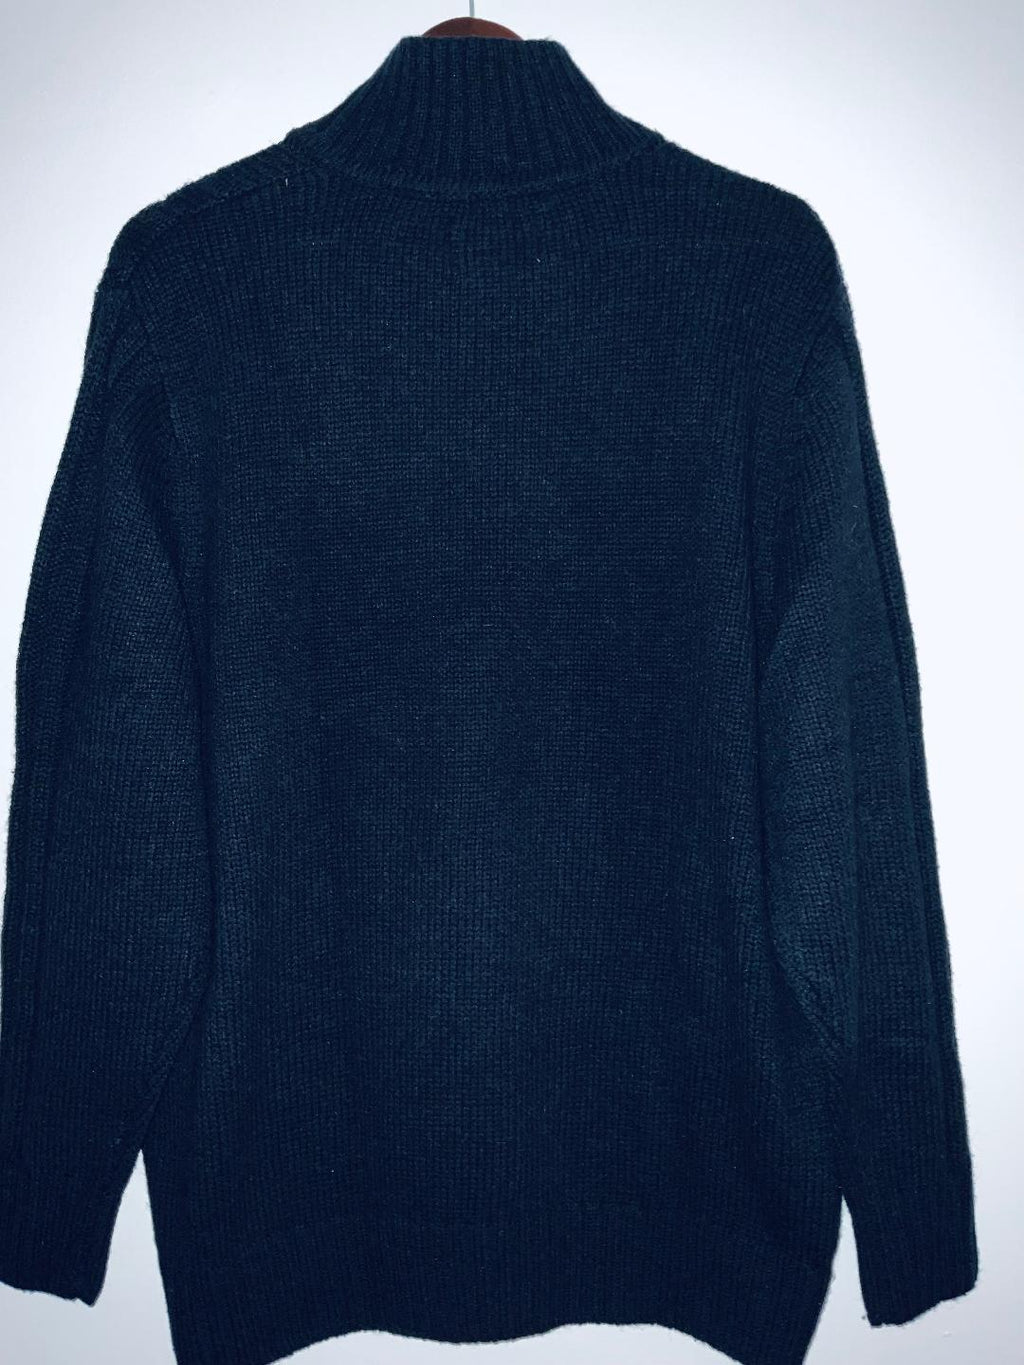 HAGGAR CLOTHING Sweater para hombre cuello alto con botones. Talla XL